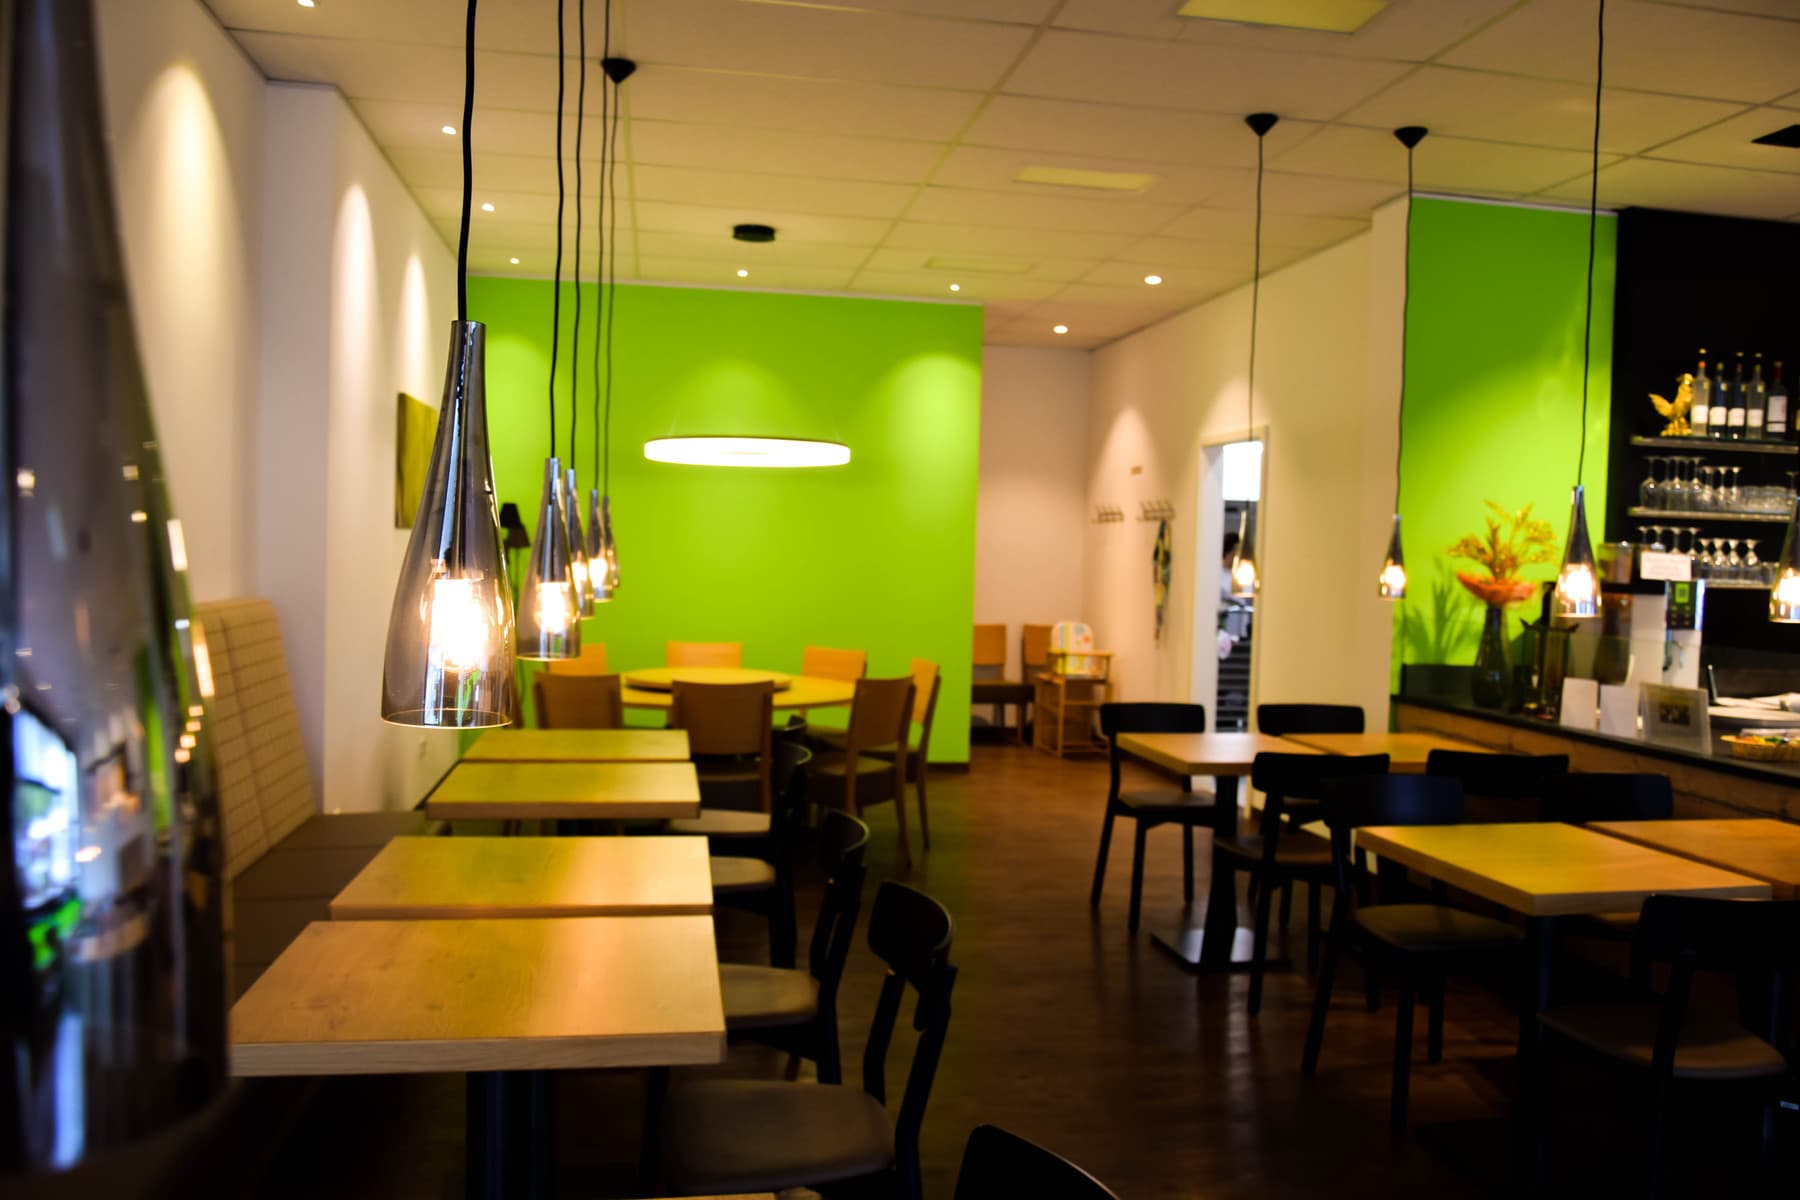 Yezis chinesisches Restaurant in Kassel authentisch chinesisch essen